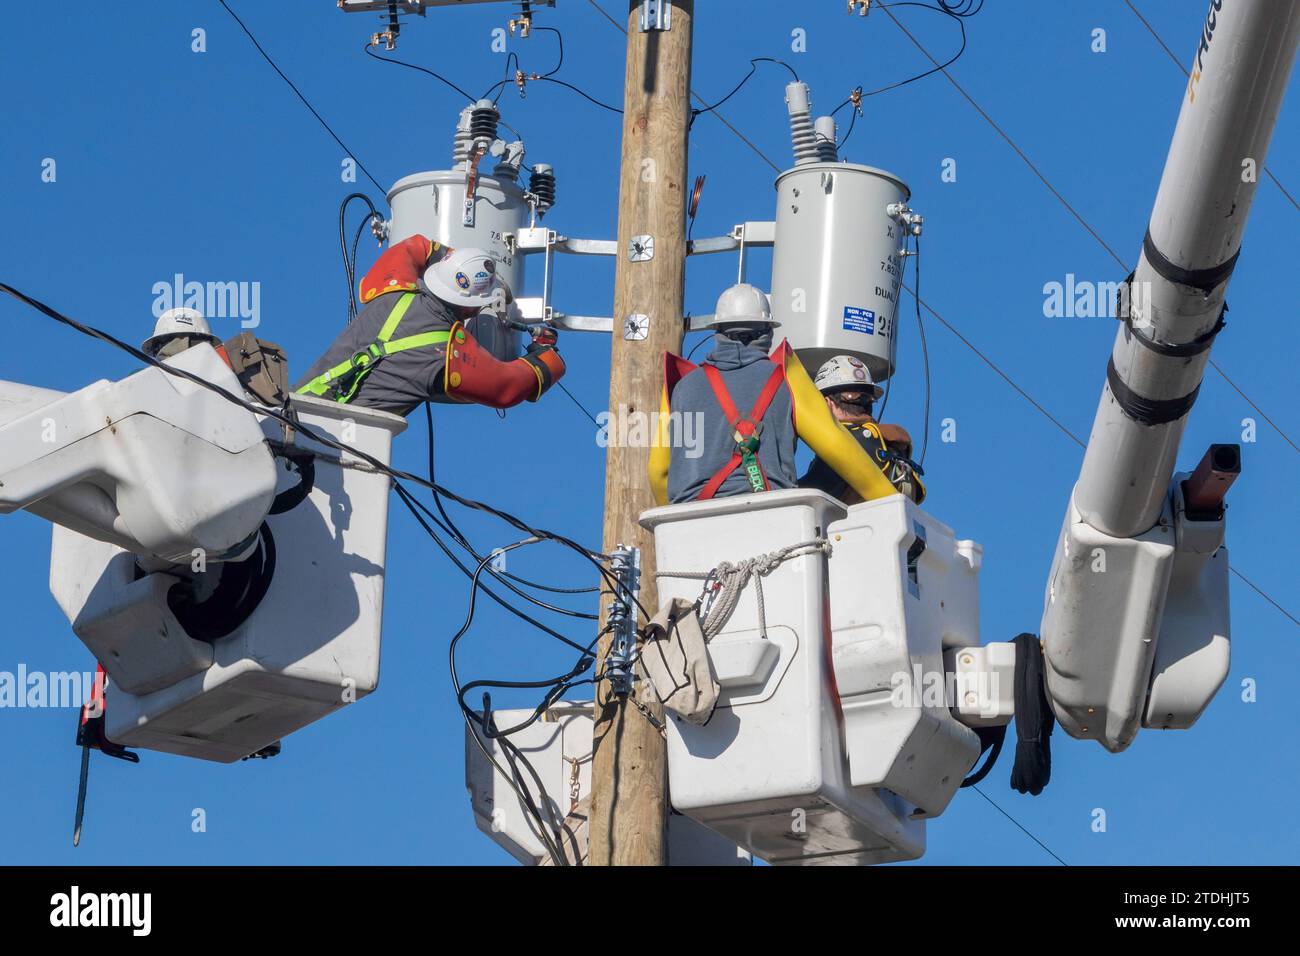 Detroit, Michigan - gli addetti alla linea elettrica, che lavorano per DTE Energy, sostituiscono le apparecchiature di trasmissione su un palo elettrico. Foto Stock